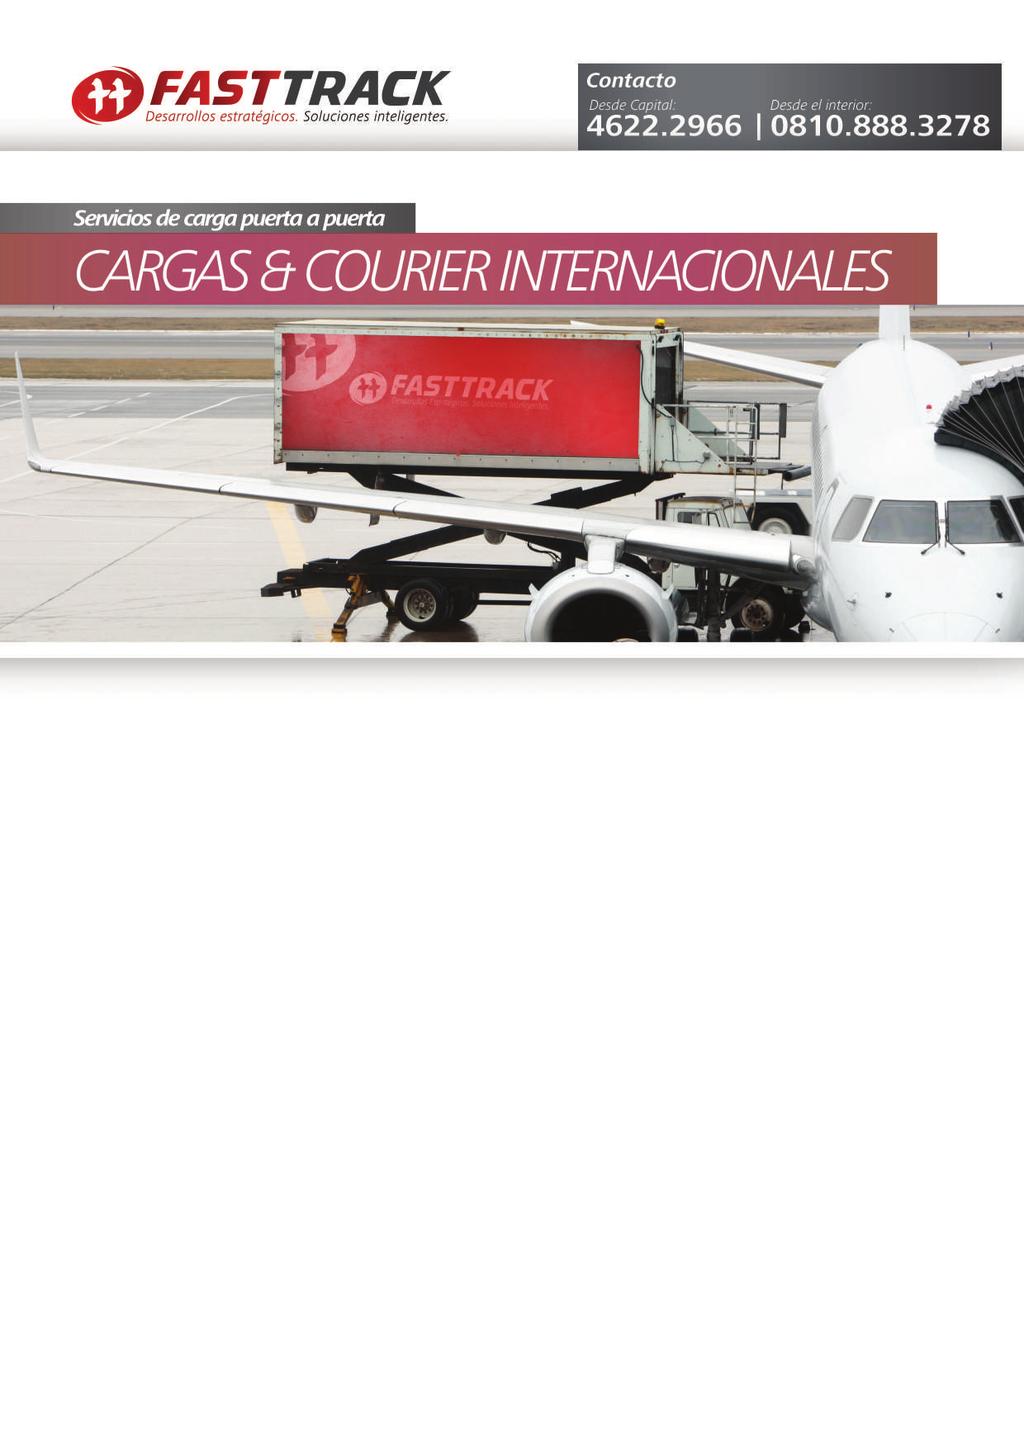 Cargas & Courier internacionales. Fast Track brinda servicio de transporte de carga internacional, ya sea de importación como de exportación.